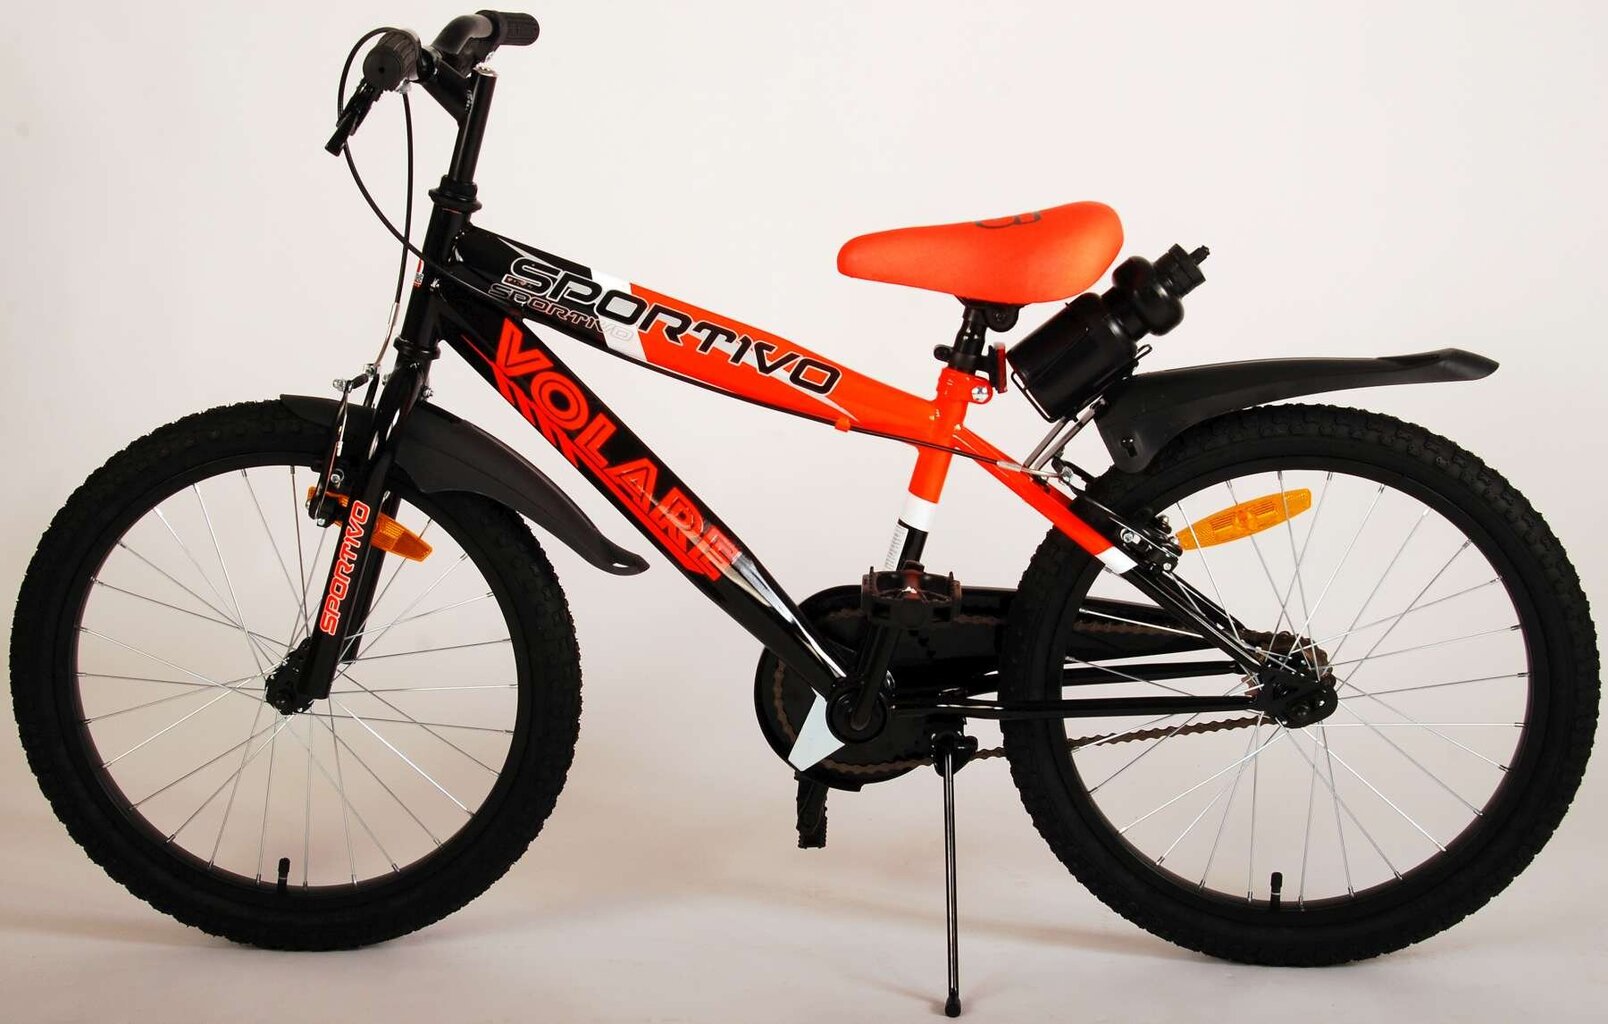 Vaikiškas dviratis Volare Sportivo 18", oranžinė/juoda kaina ir informacija | Dviračiai | pigu.lt